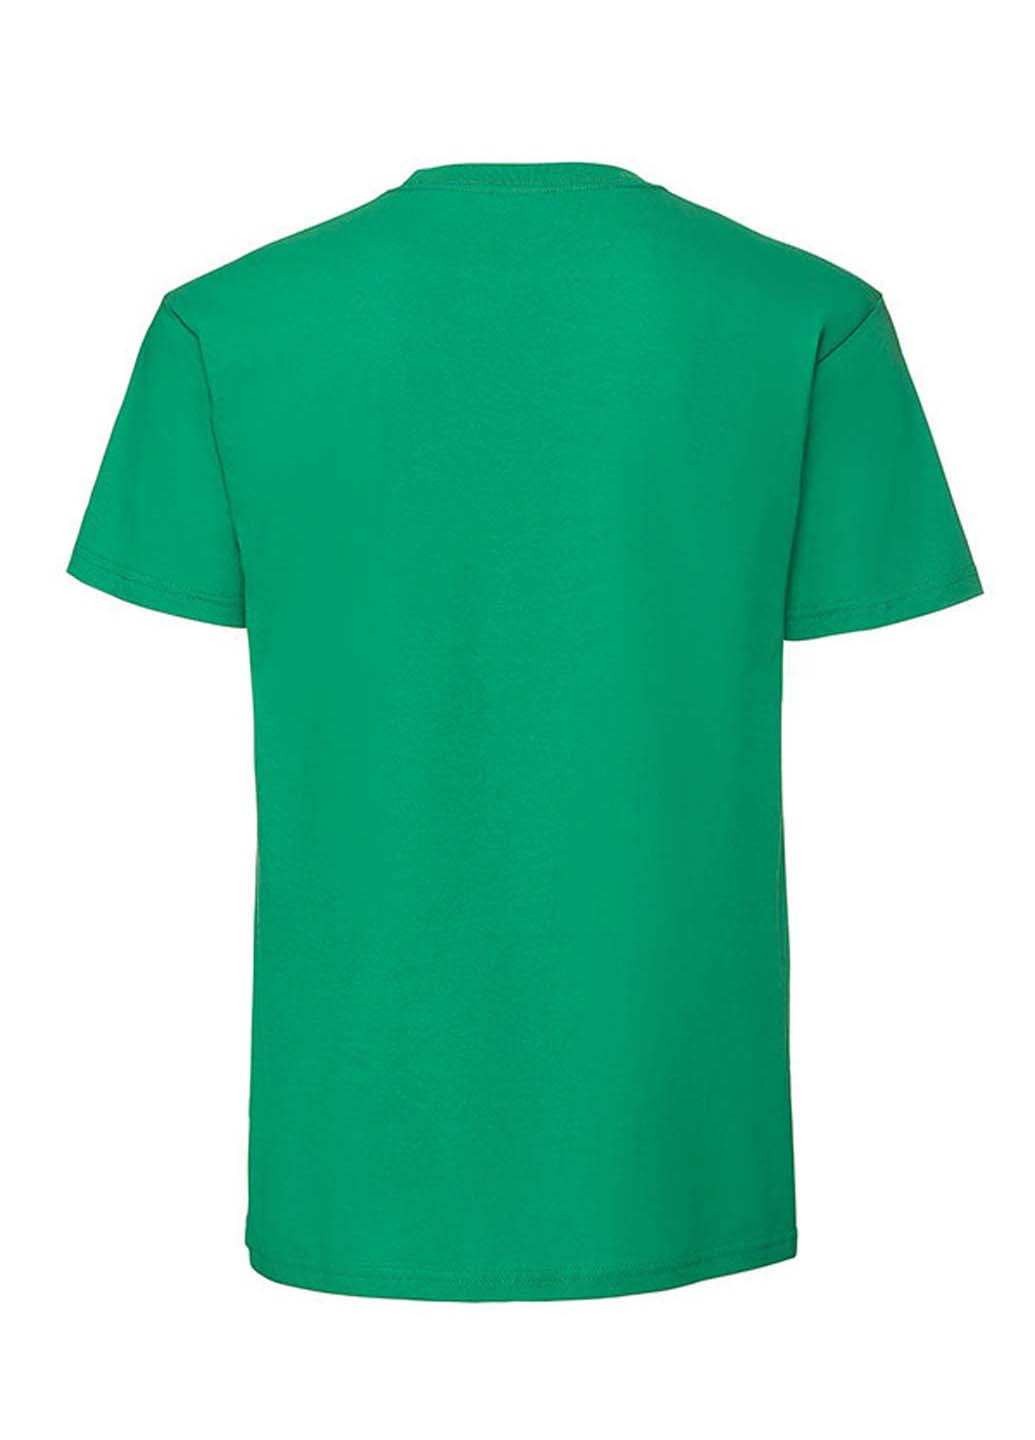 Зеленая футболка Fruit of the Loom Ringspun premium